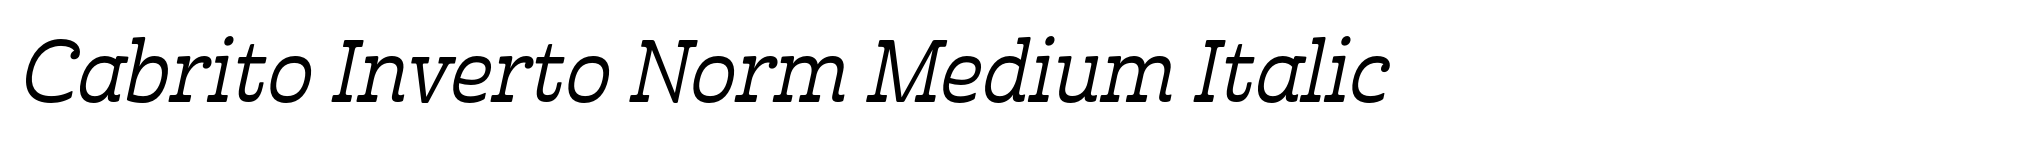 Cabrito Inverto Norm Medium Italic image